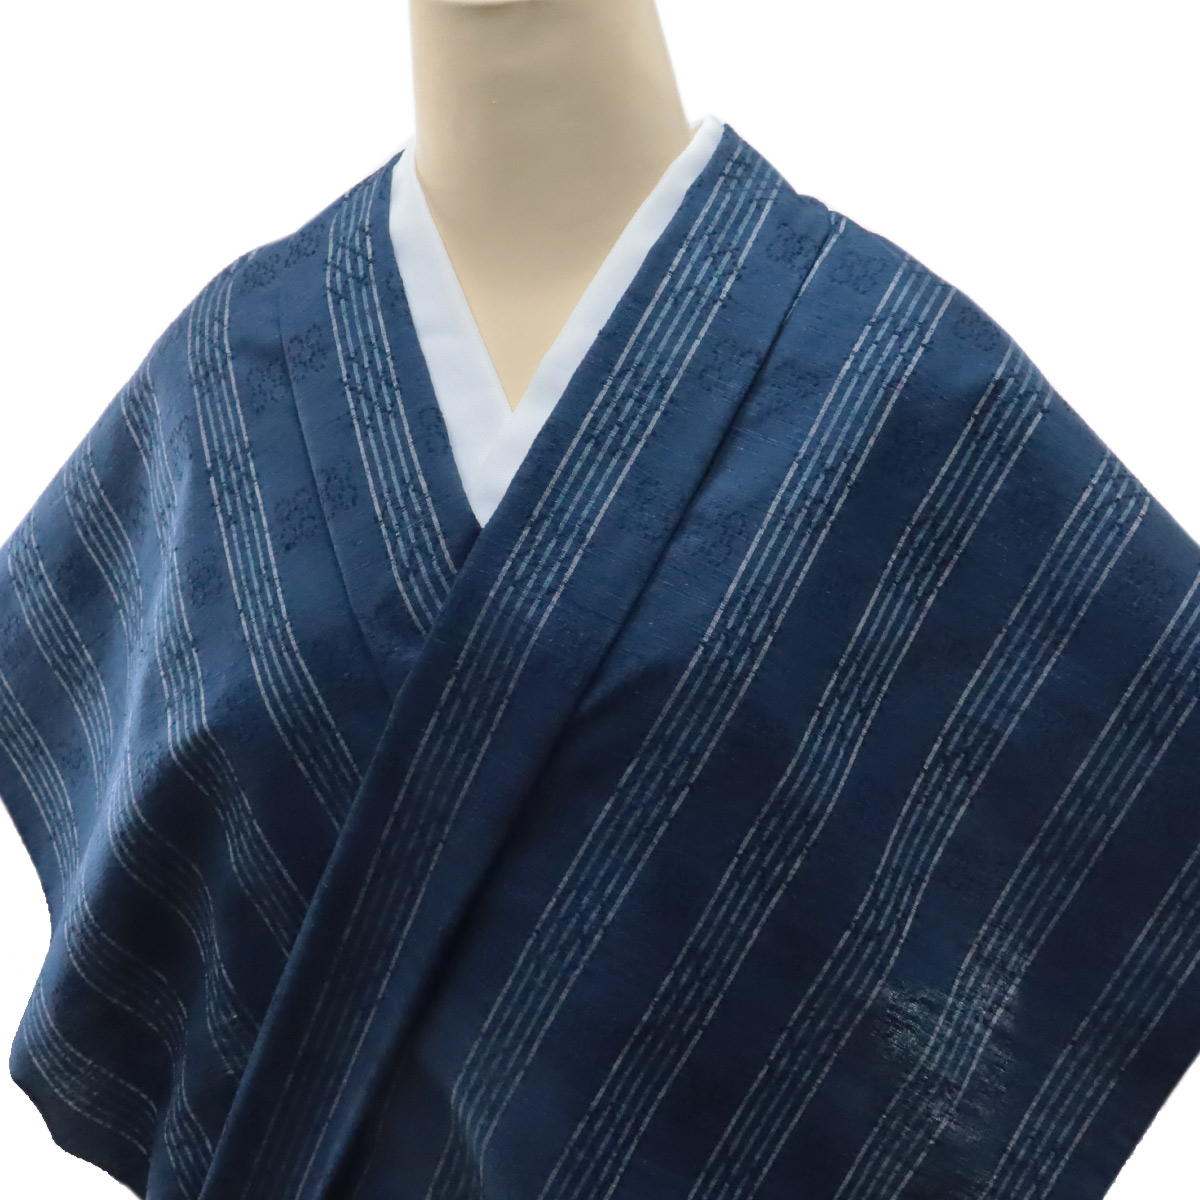 紬 反物 -2- 花織 琉里縞 正絹紬 絹100% 青藍 縞柄 : n-tmg-2 : あおい 